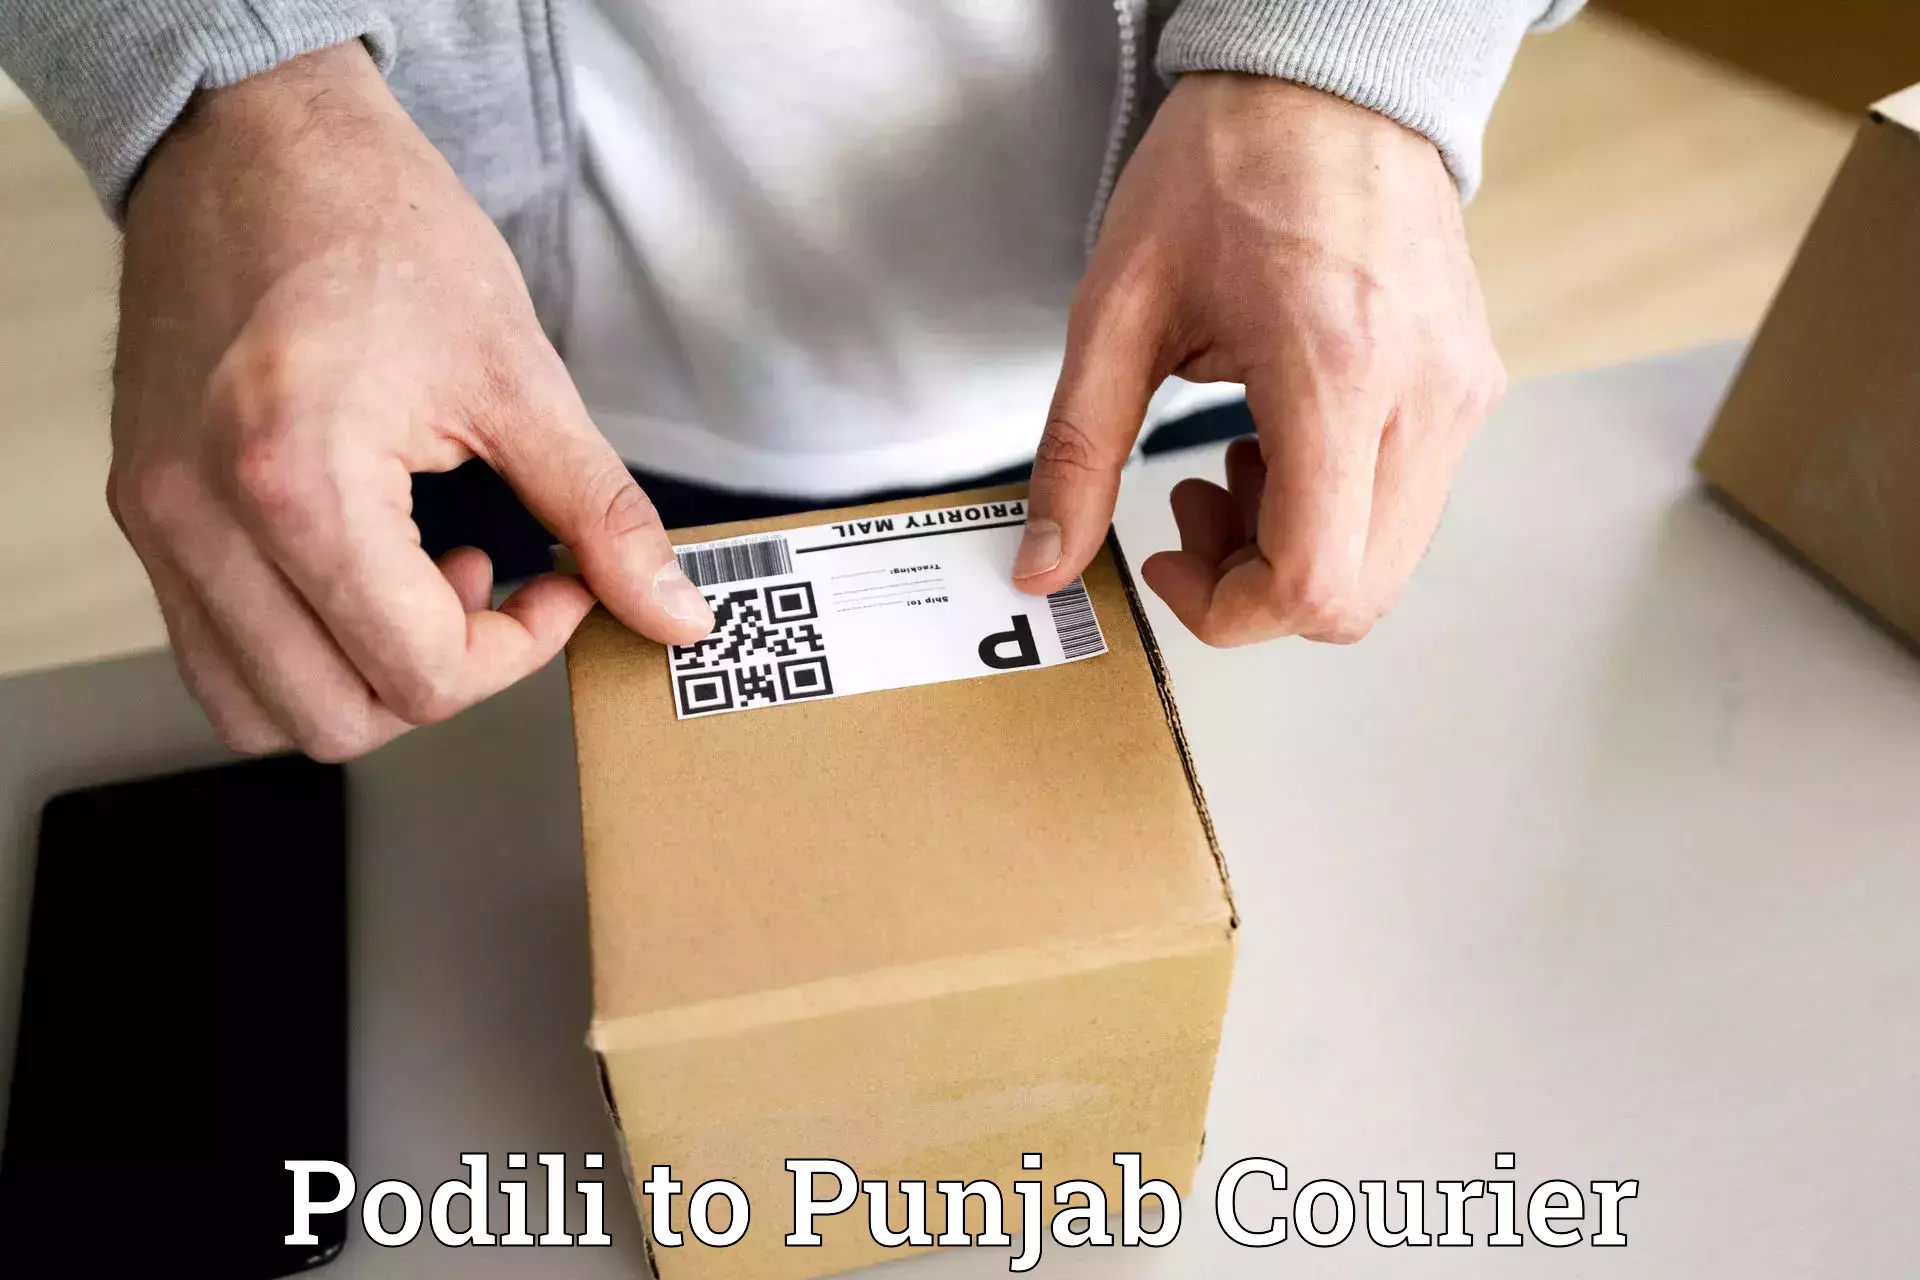 Optimized shipping services Podili to Central University of Punjab Bathinda